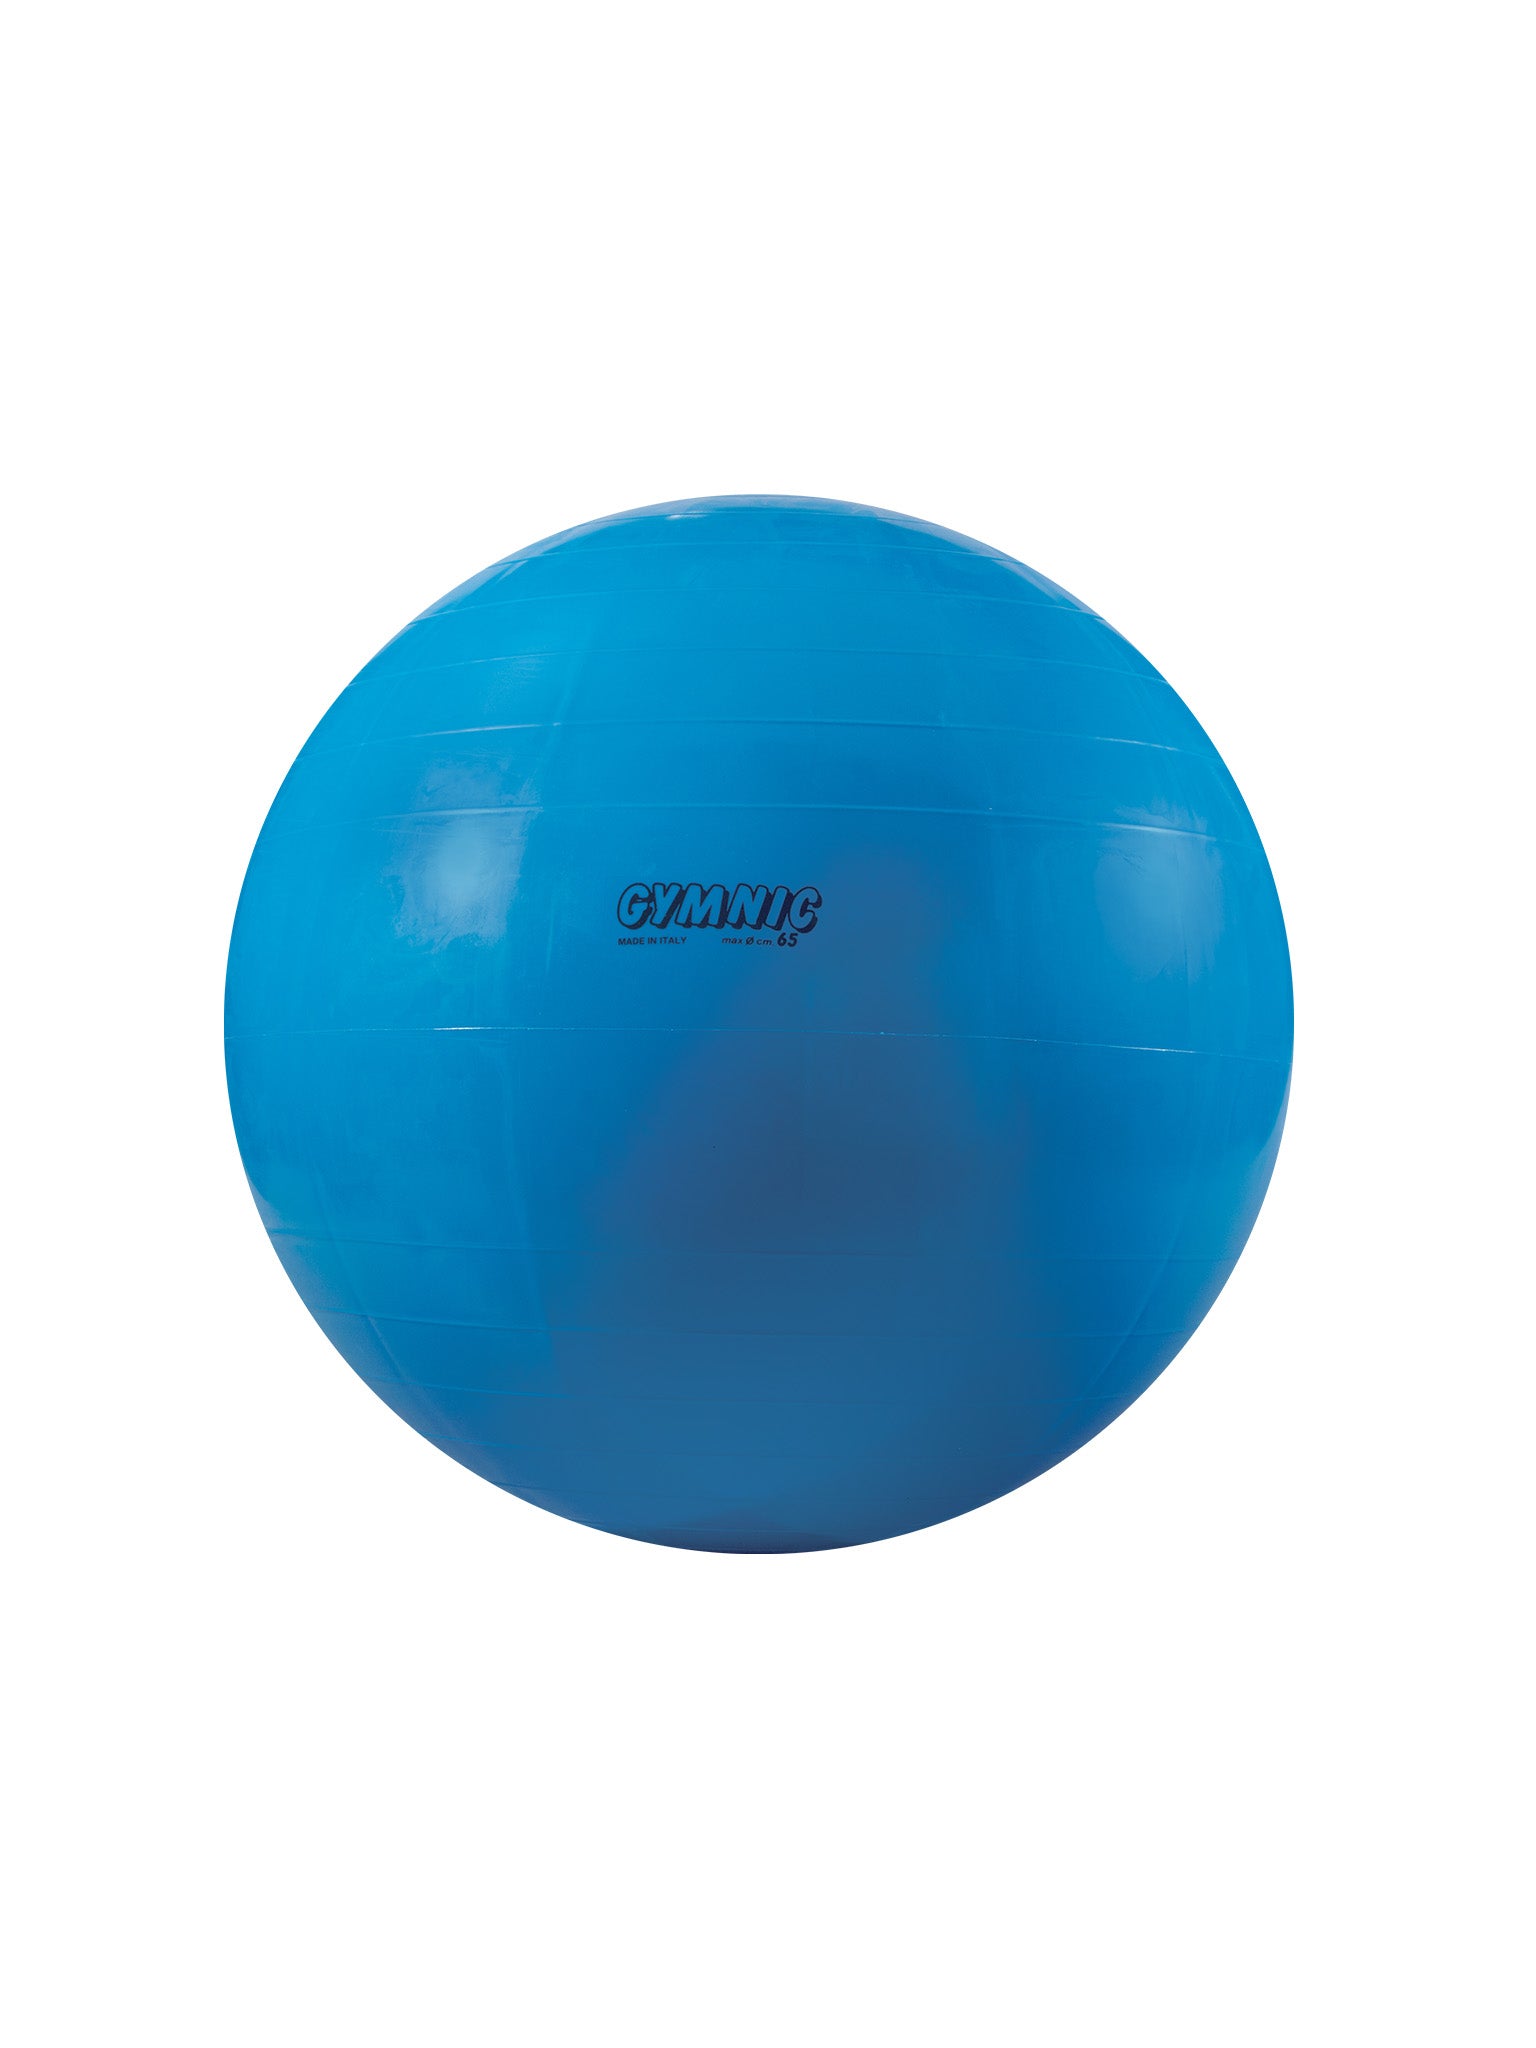 Ballons De Stabilité 360 Athletics